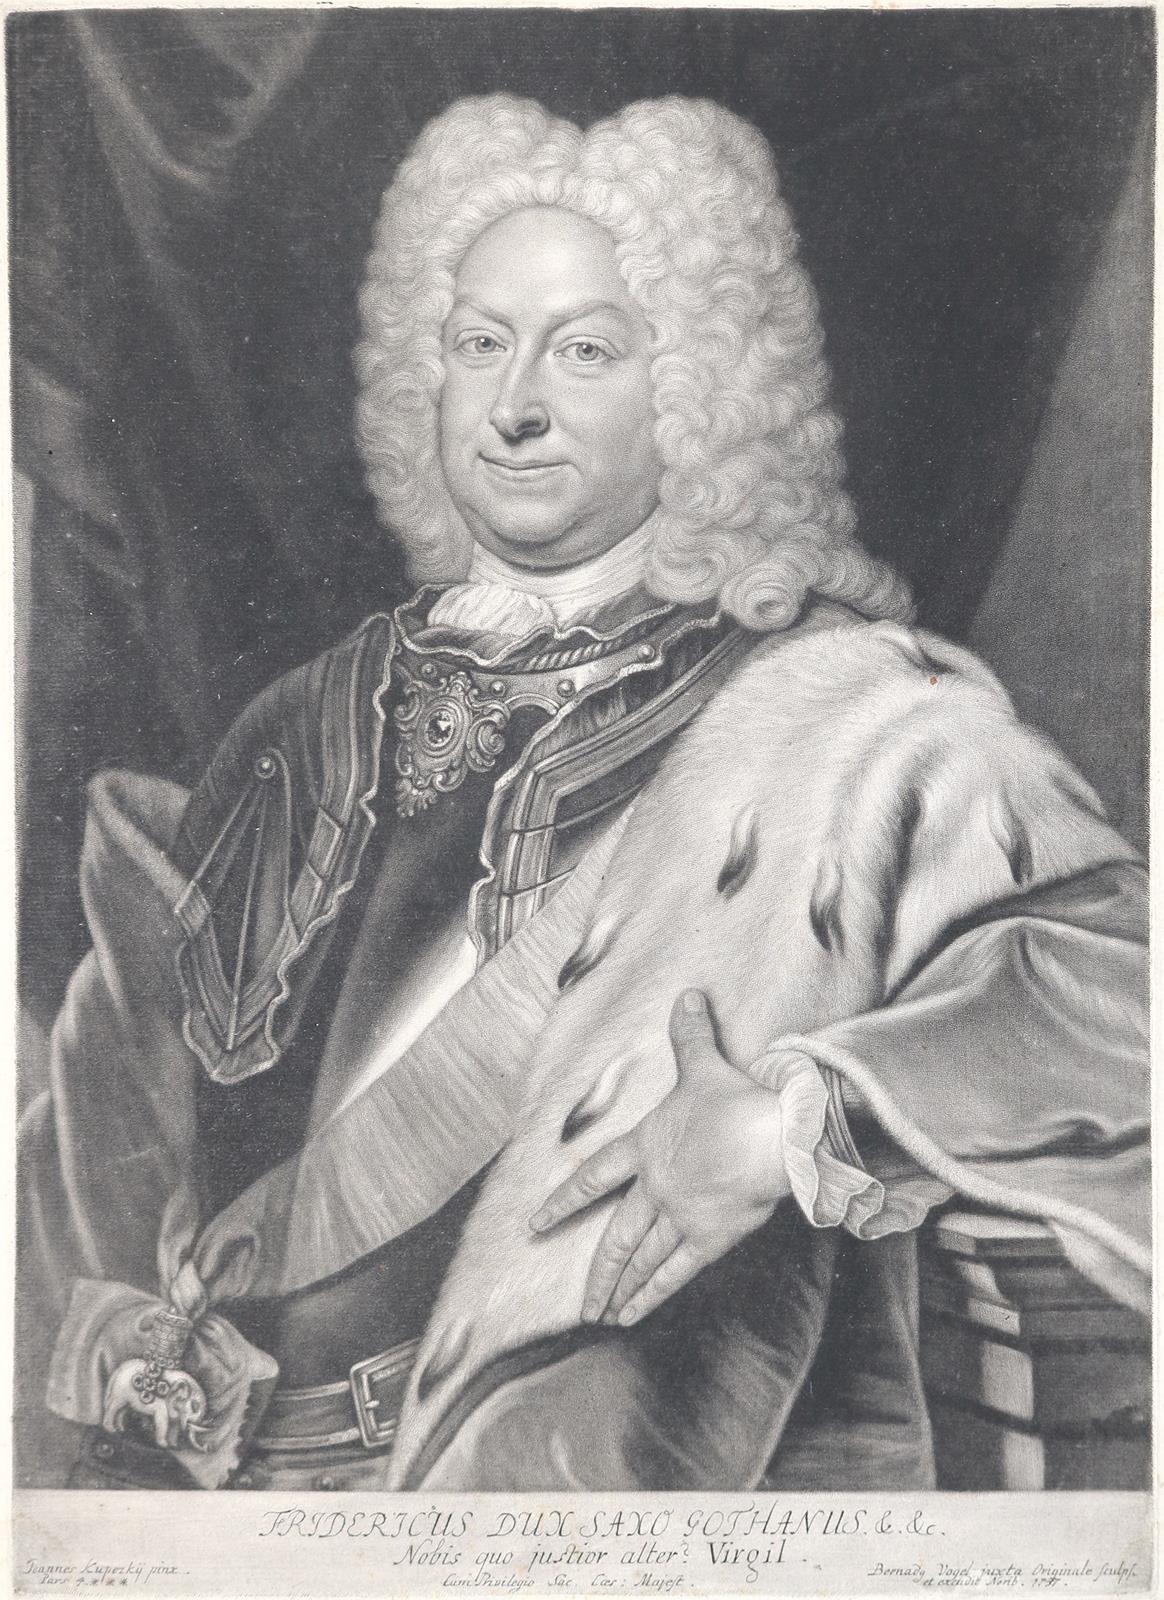 Friederich, Herzog von Sachsen-Gotha-Altenburg.